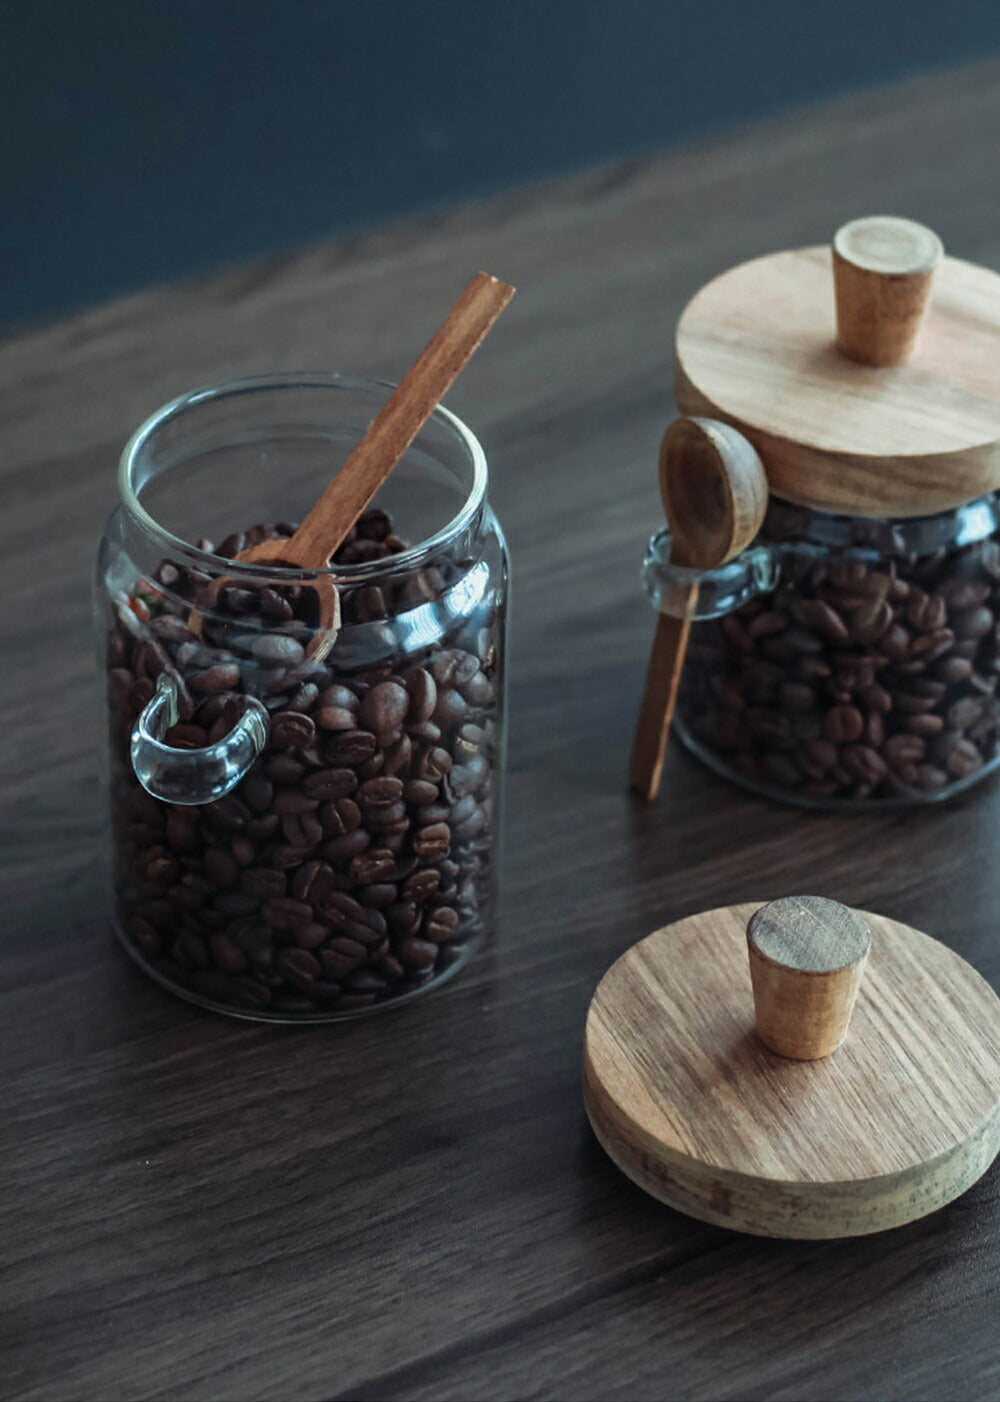 IwaiLoft【スプーン付き】天然木の蓋 ガラスキャニスター 珈琲キャニスター 耐熱ガラス 北欧 おしゃれ コーヒー豆 保存容器 ガラスガ – 茶器・ コーヒー用品を選ぶ - IwaiLoft